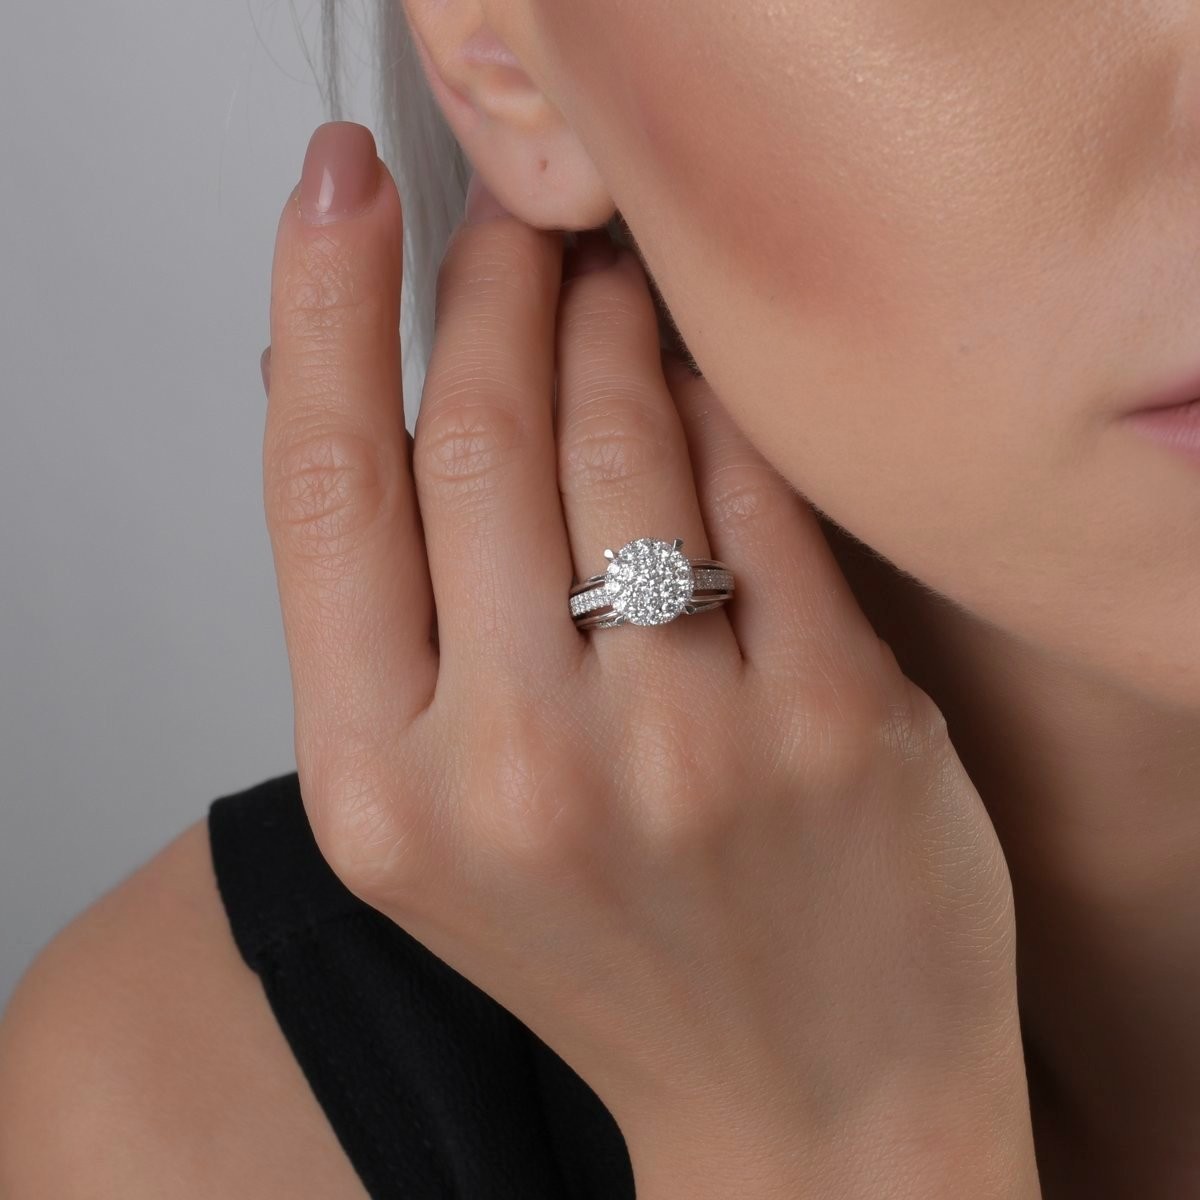 18K fehérarany eljegyzési gyűrű 0.89ct gyémántokkal